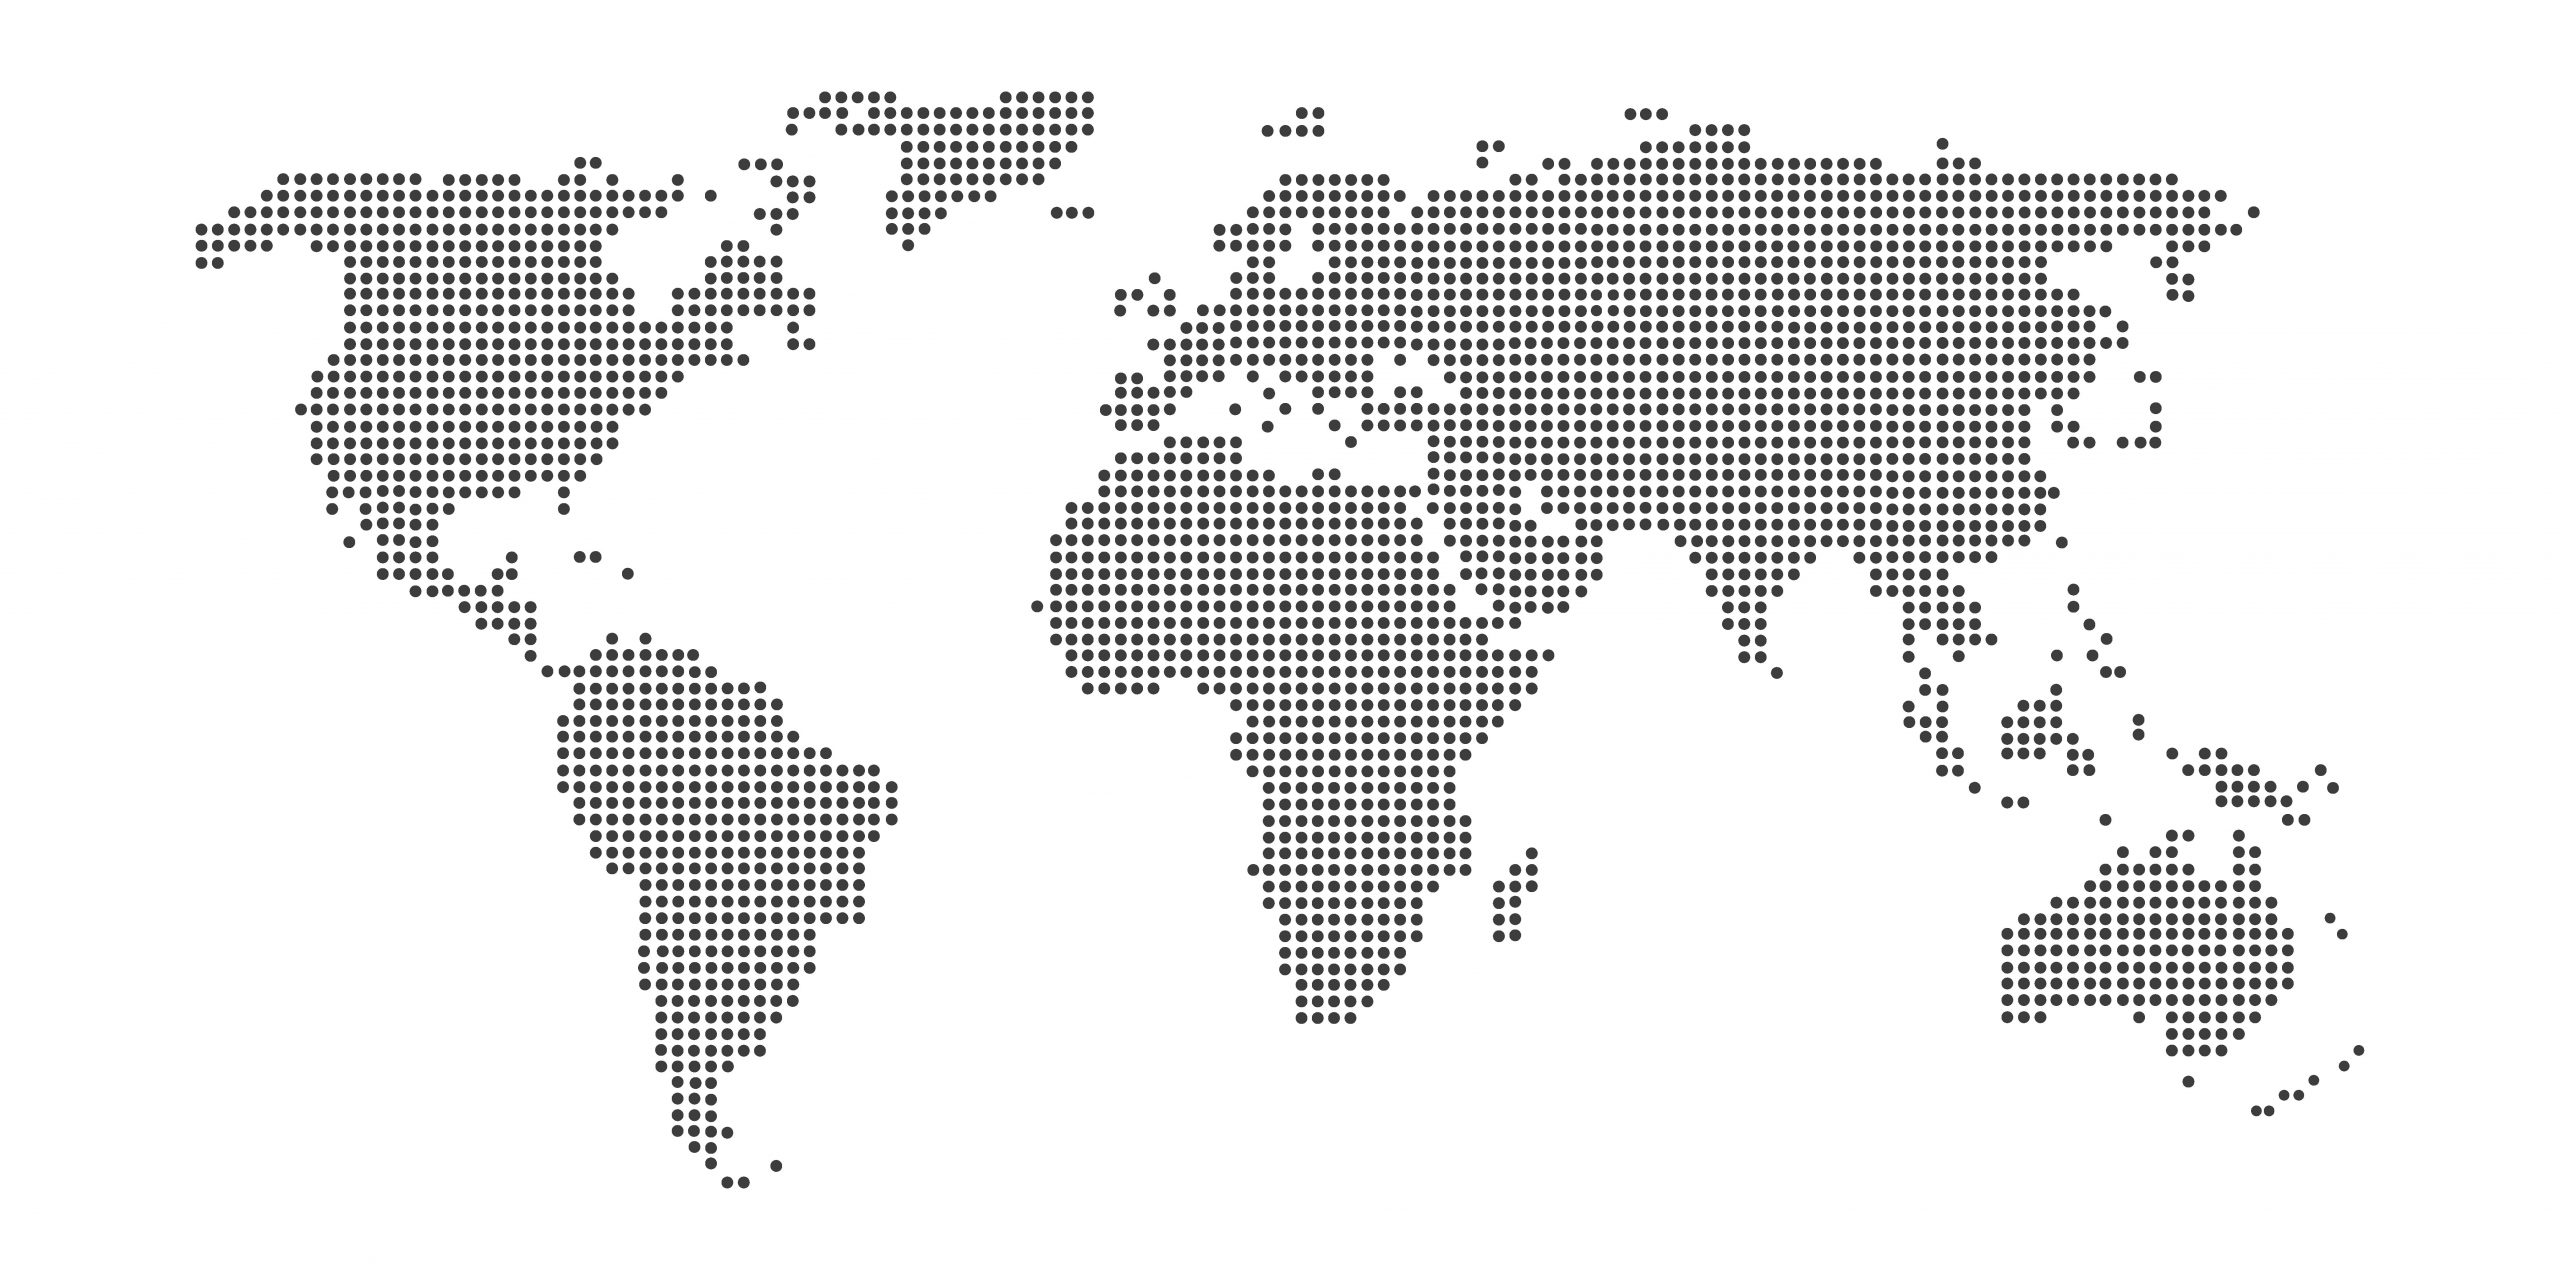 Imagen mapa del mundo pixelado